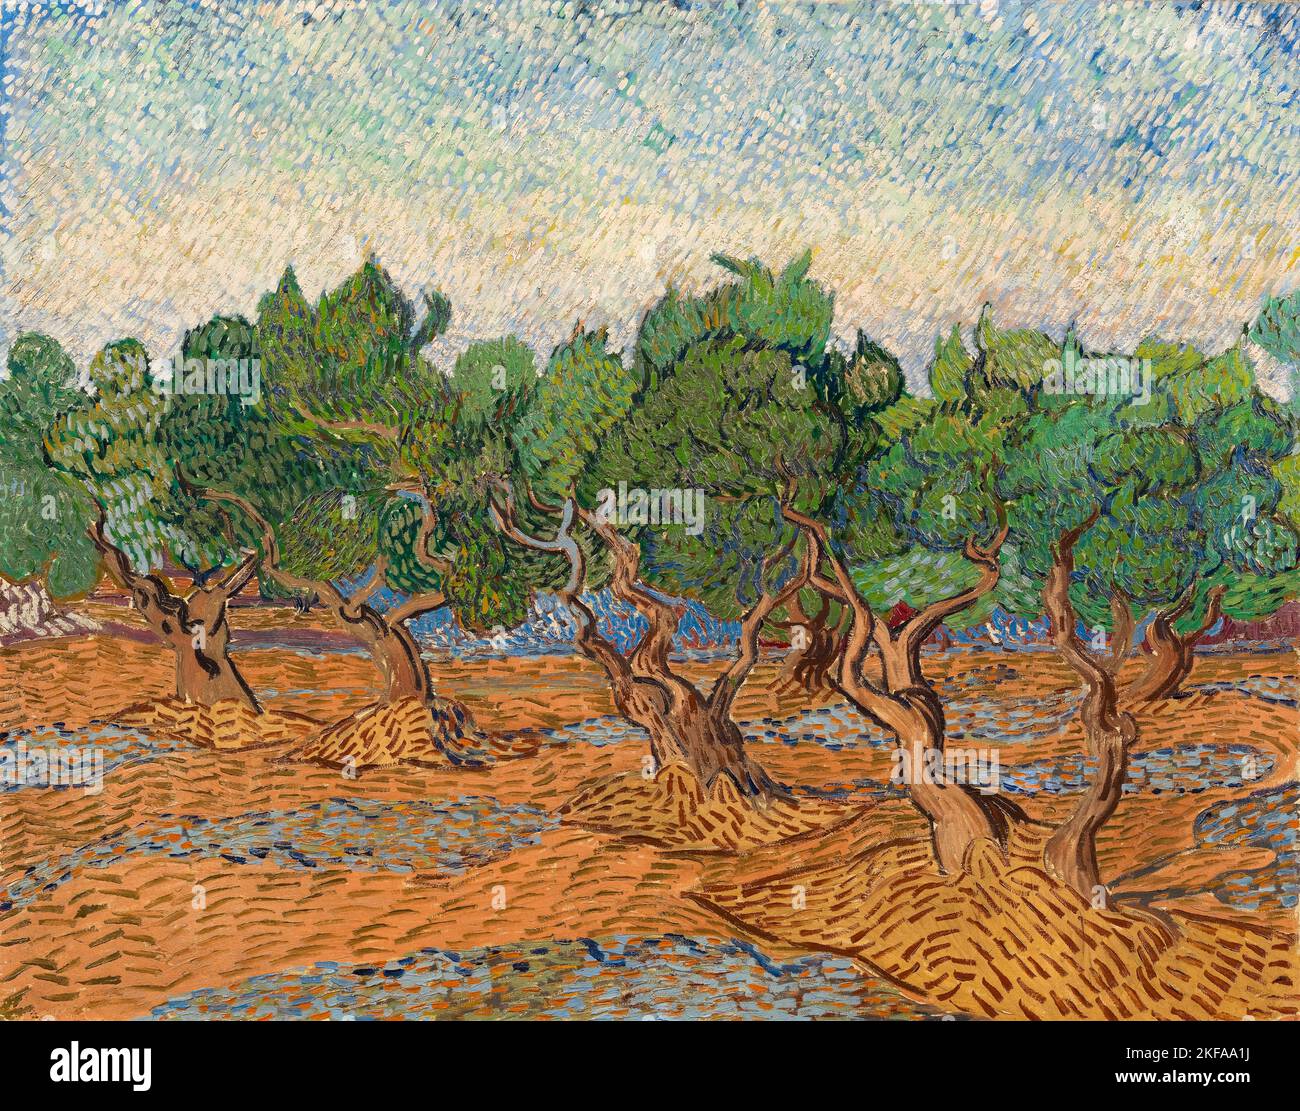 Vincent van Gogh paysage peinture, Olive Grove, huile sur toile, 1889 Banque D'Images